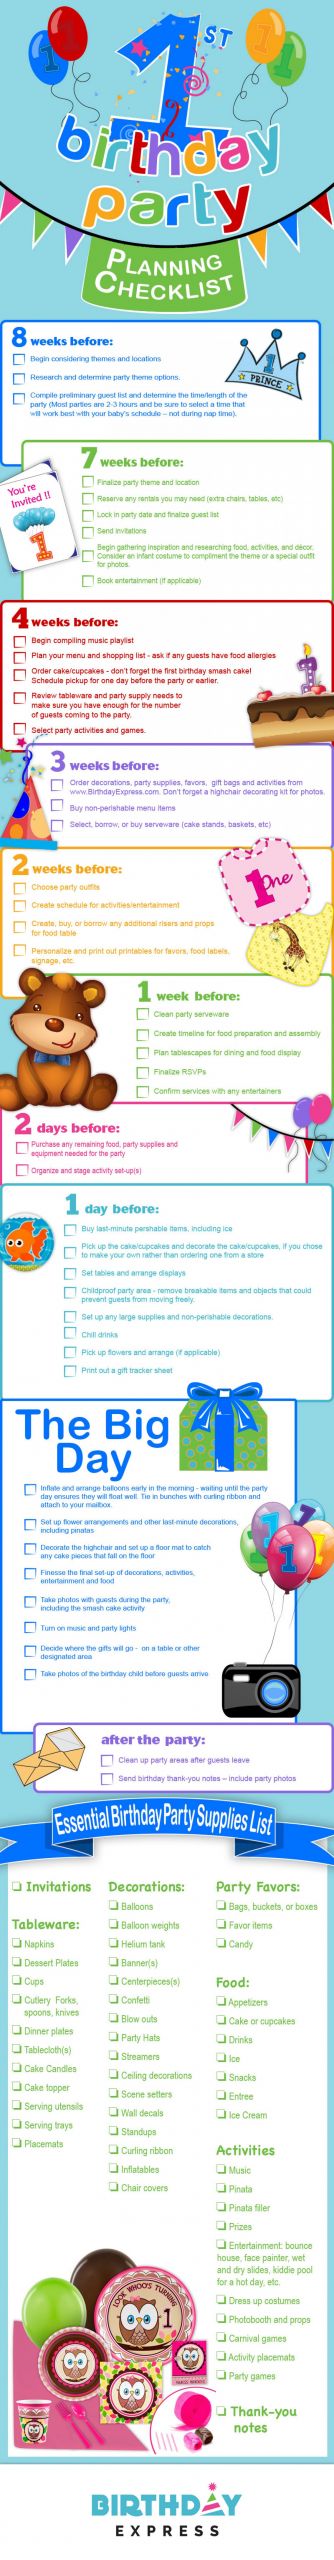 First Birthday Party Checklist
 1st Birthday Party Planning Checklist